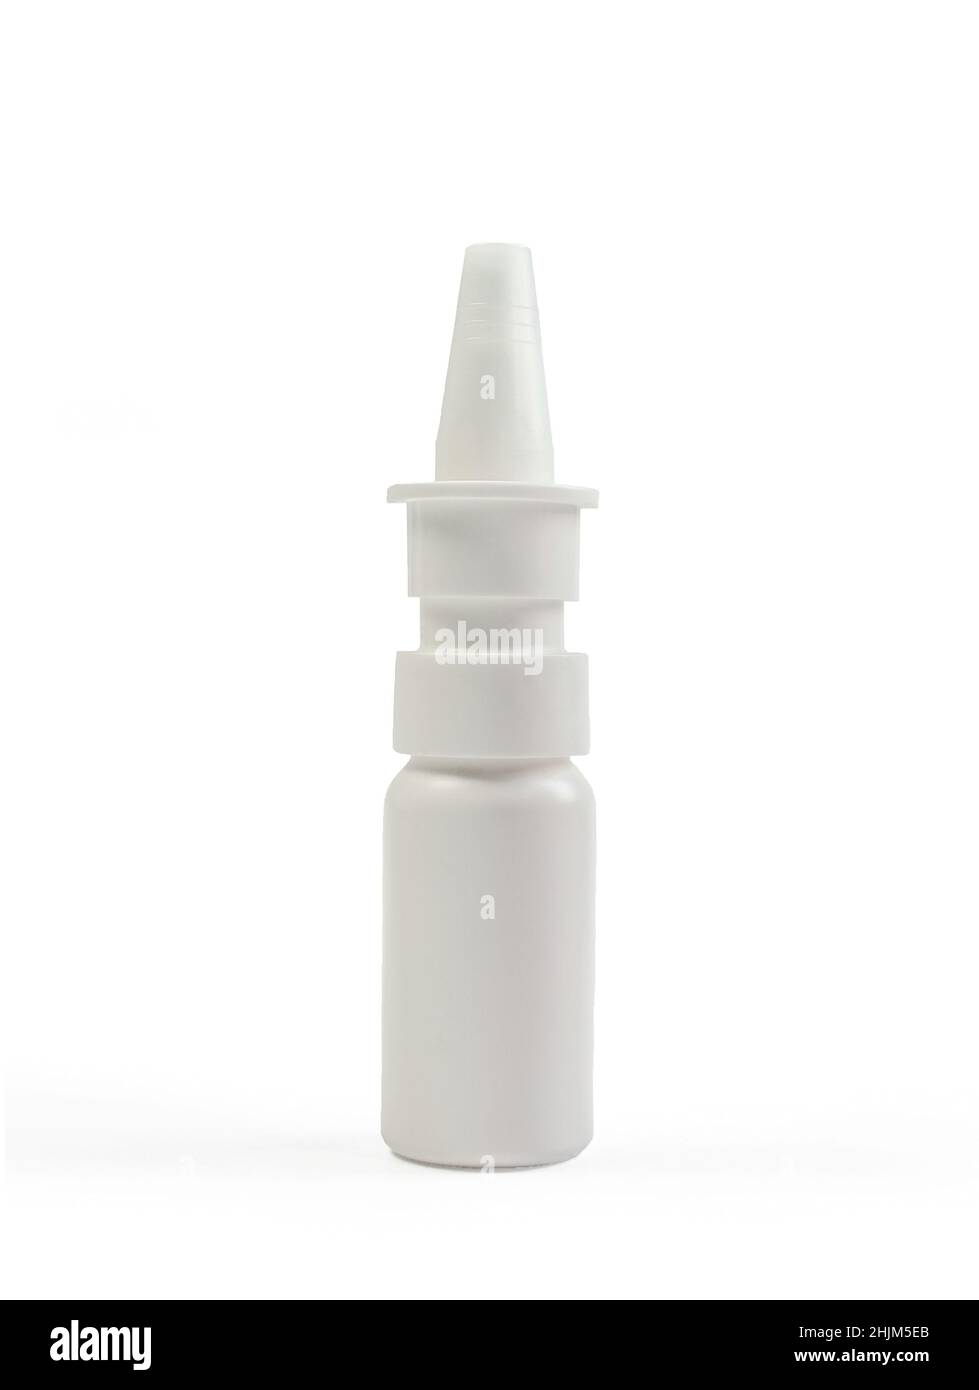 Medical spray bottle isolated on white background. Pharmaceutical product Stock Photo